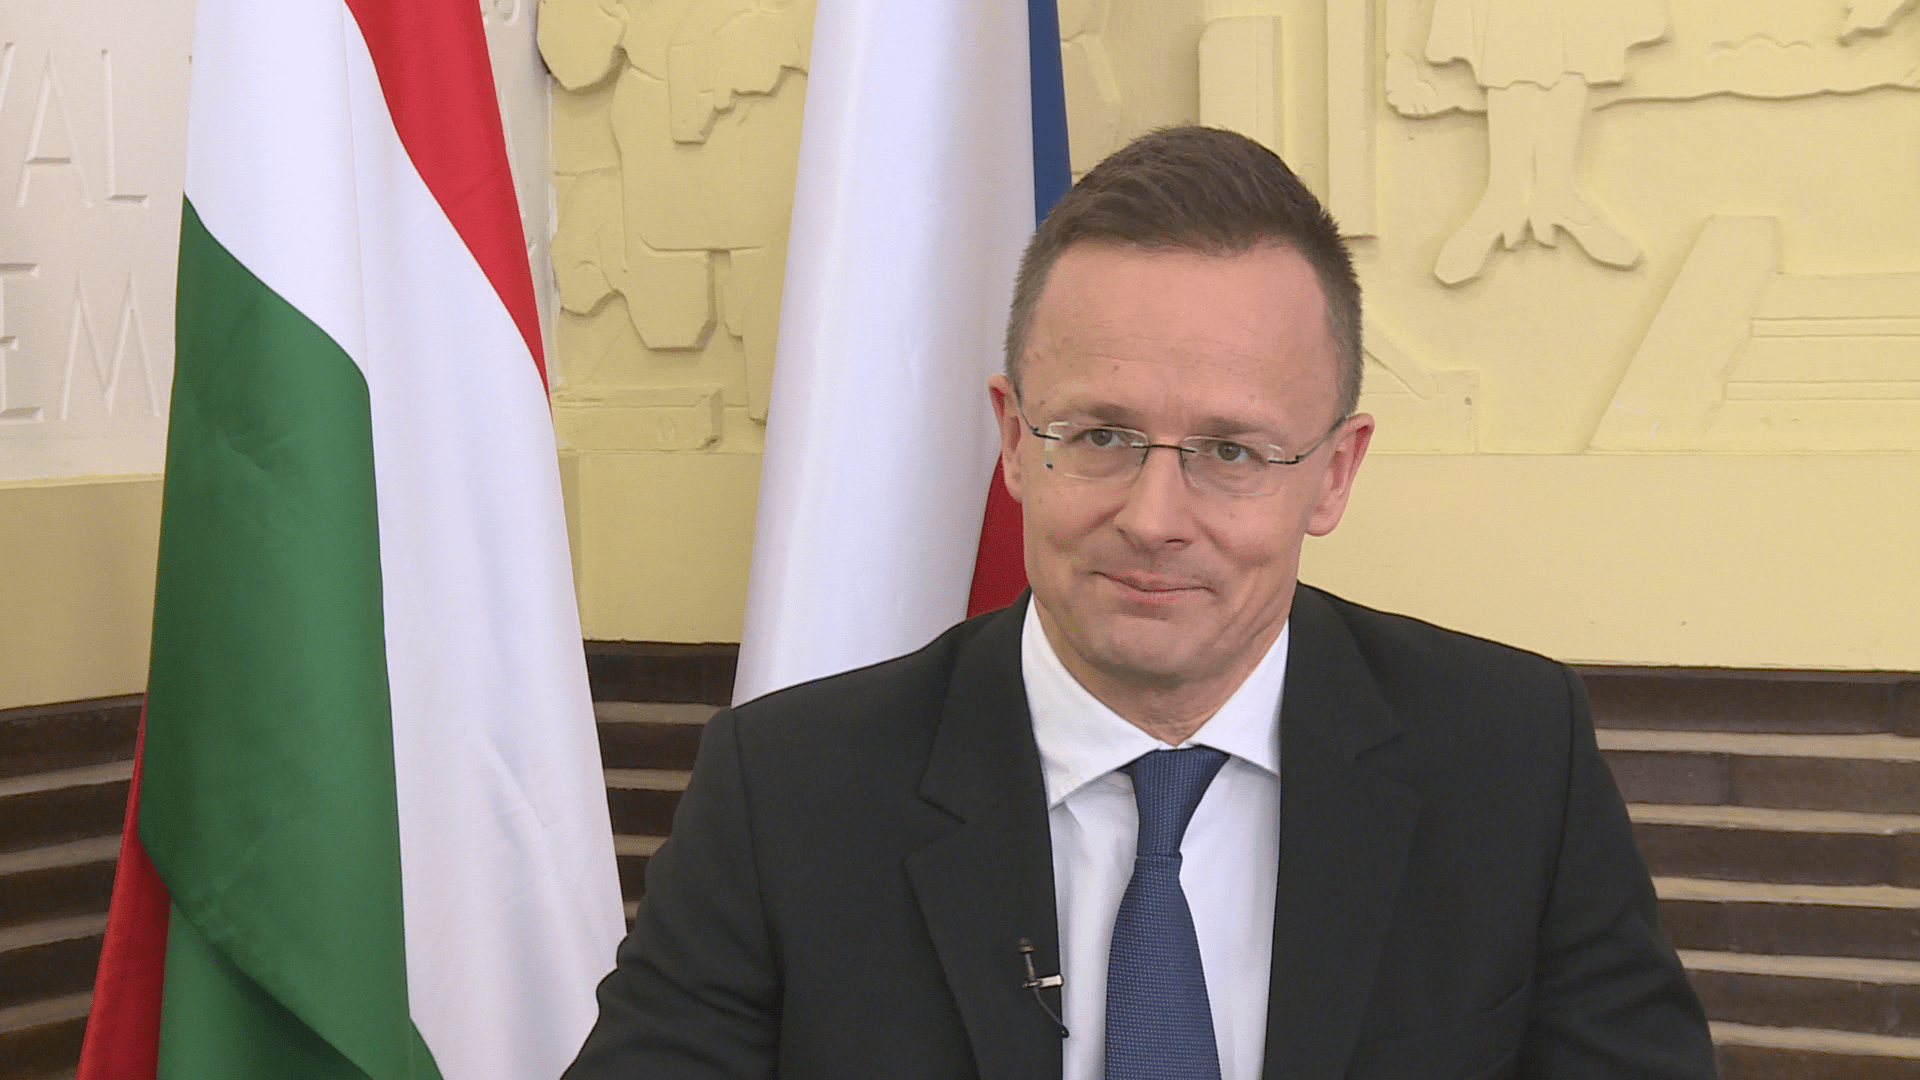 Maďarský ministr zahraničí Péter Szijjártó poskytl rozhovor pro CNN Prima NEWS.